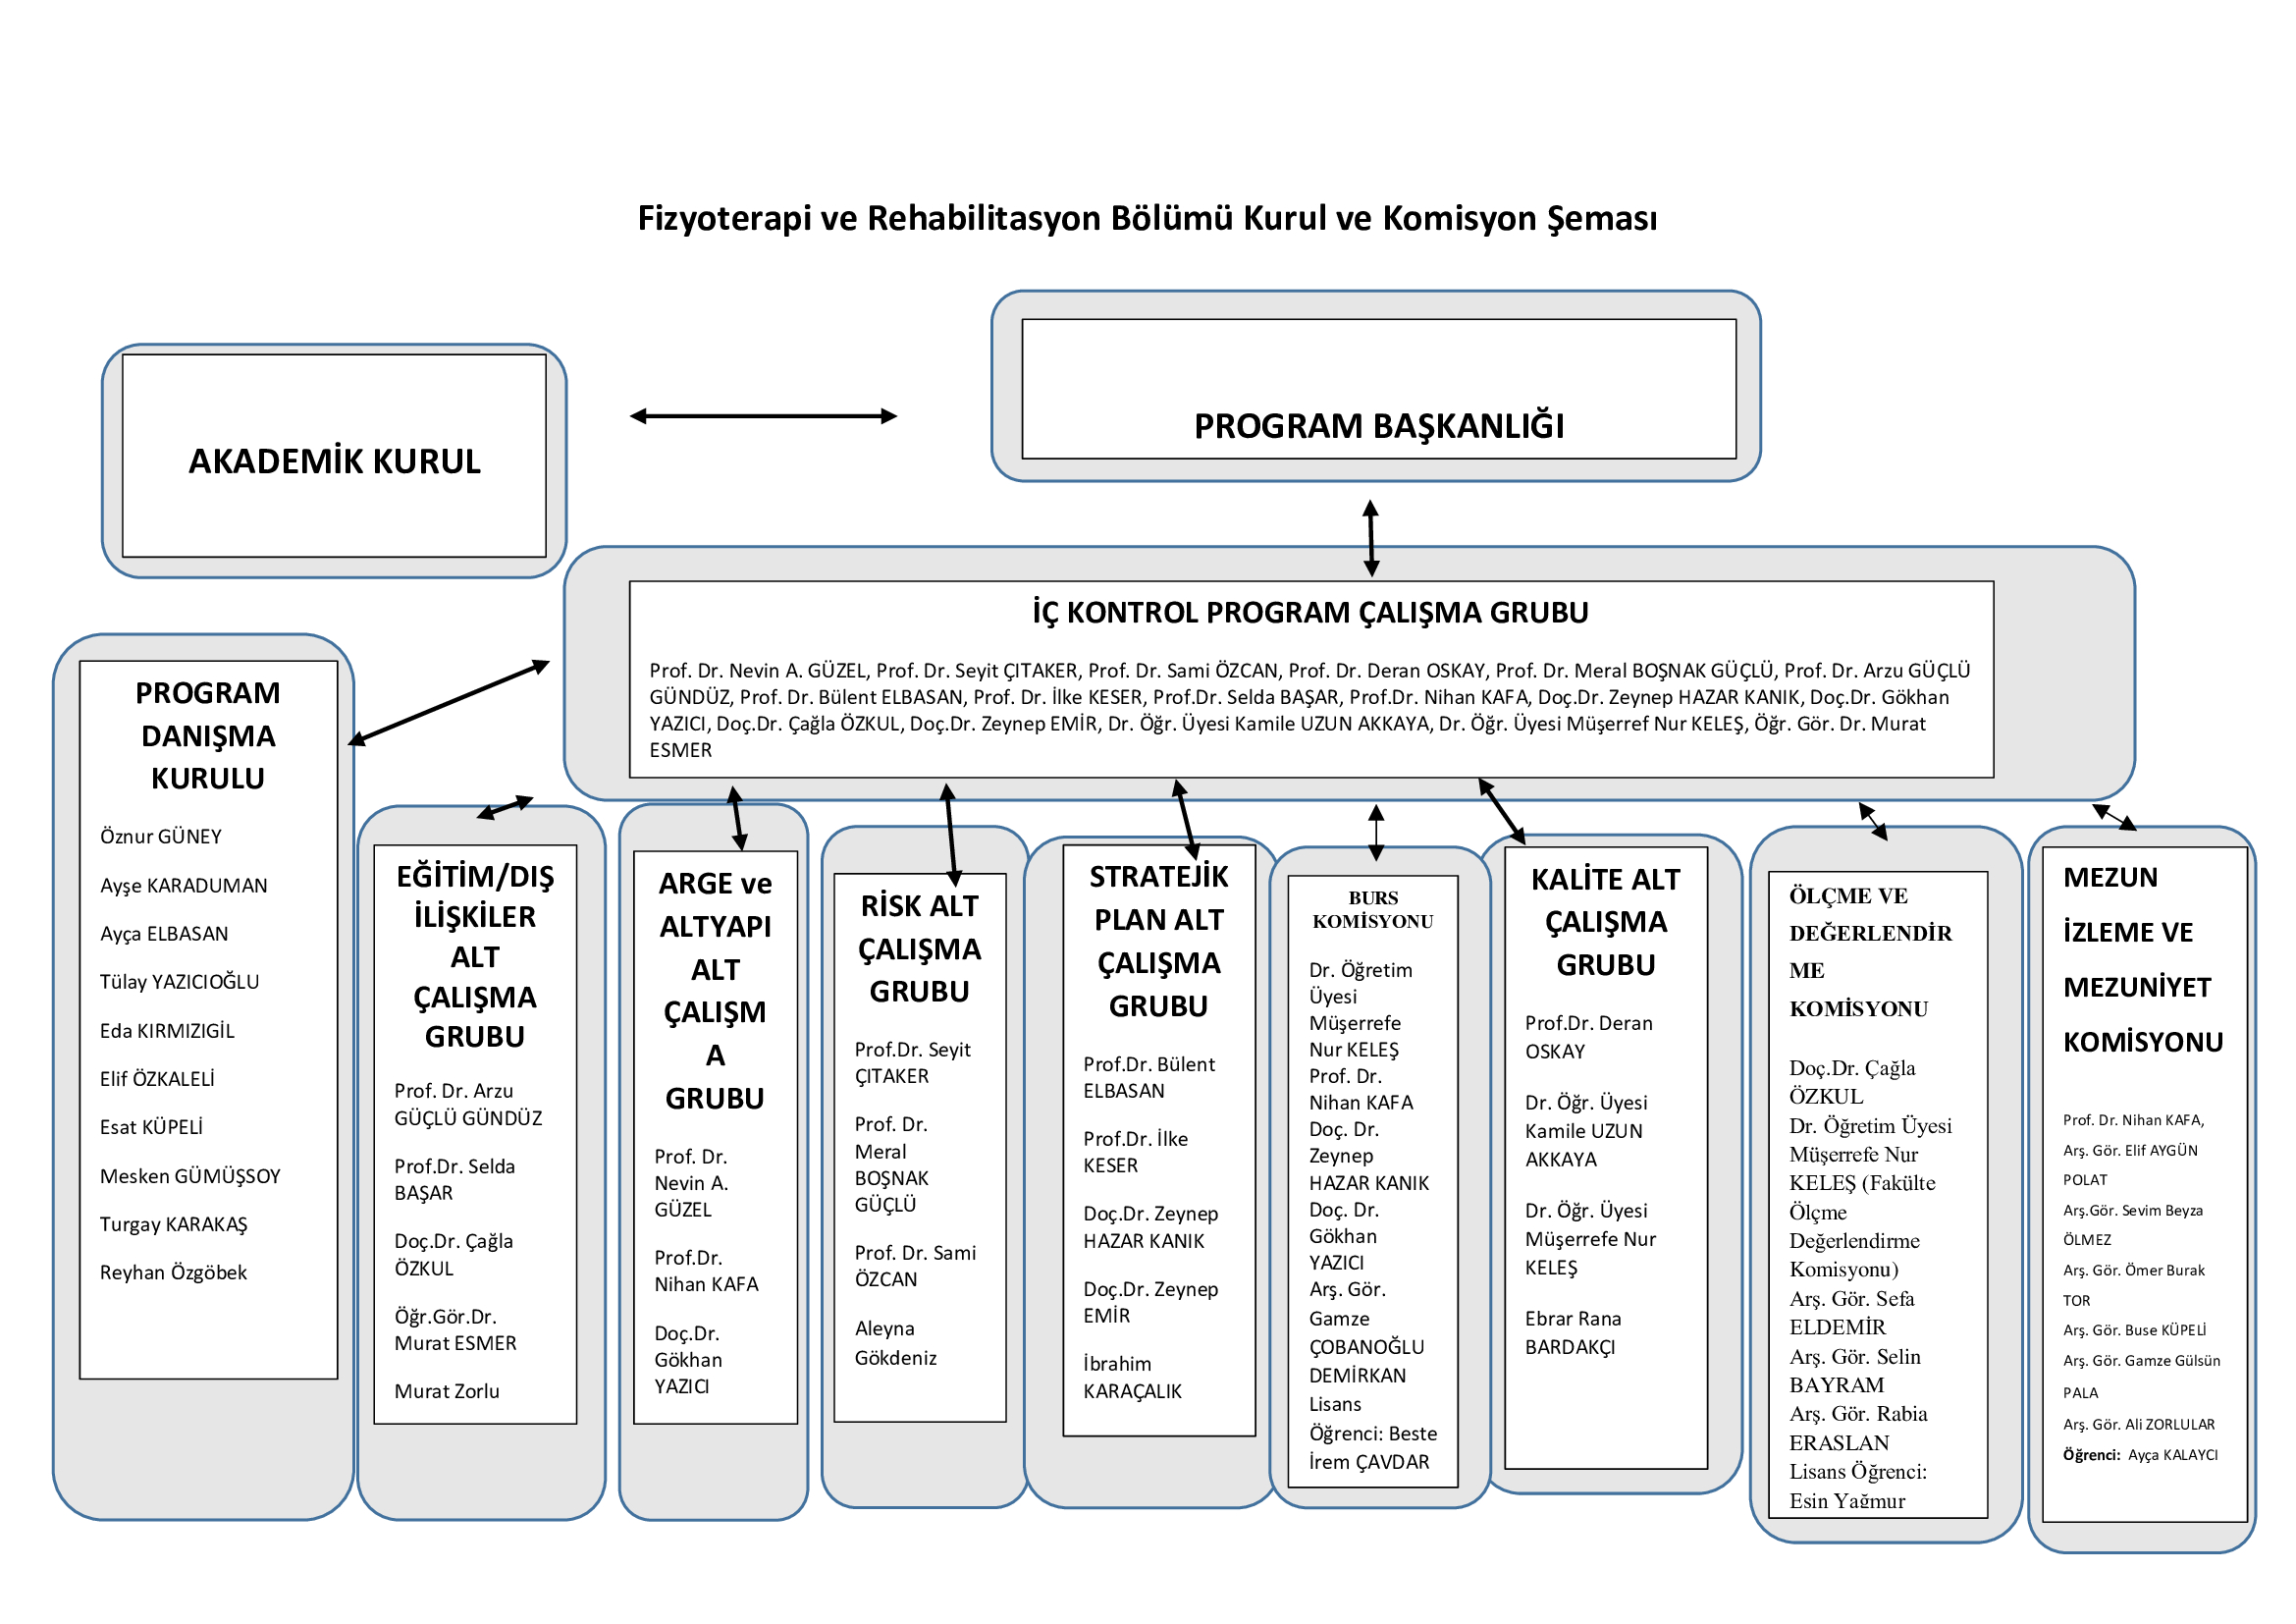 Program Kurul ve Komisyonlar Şeması